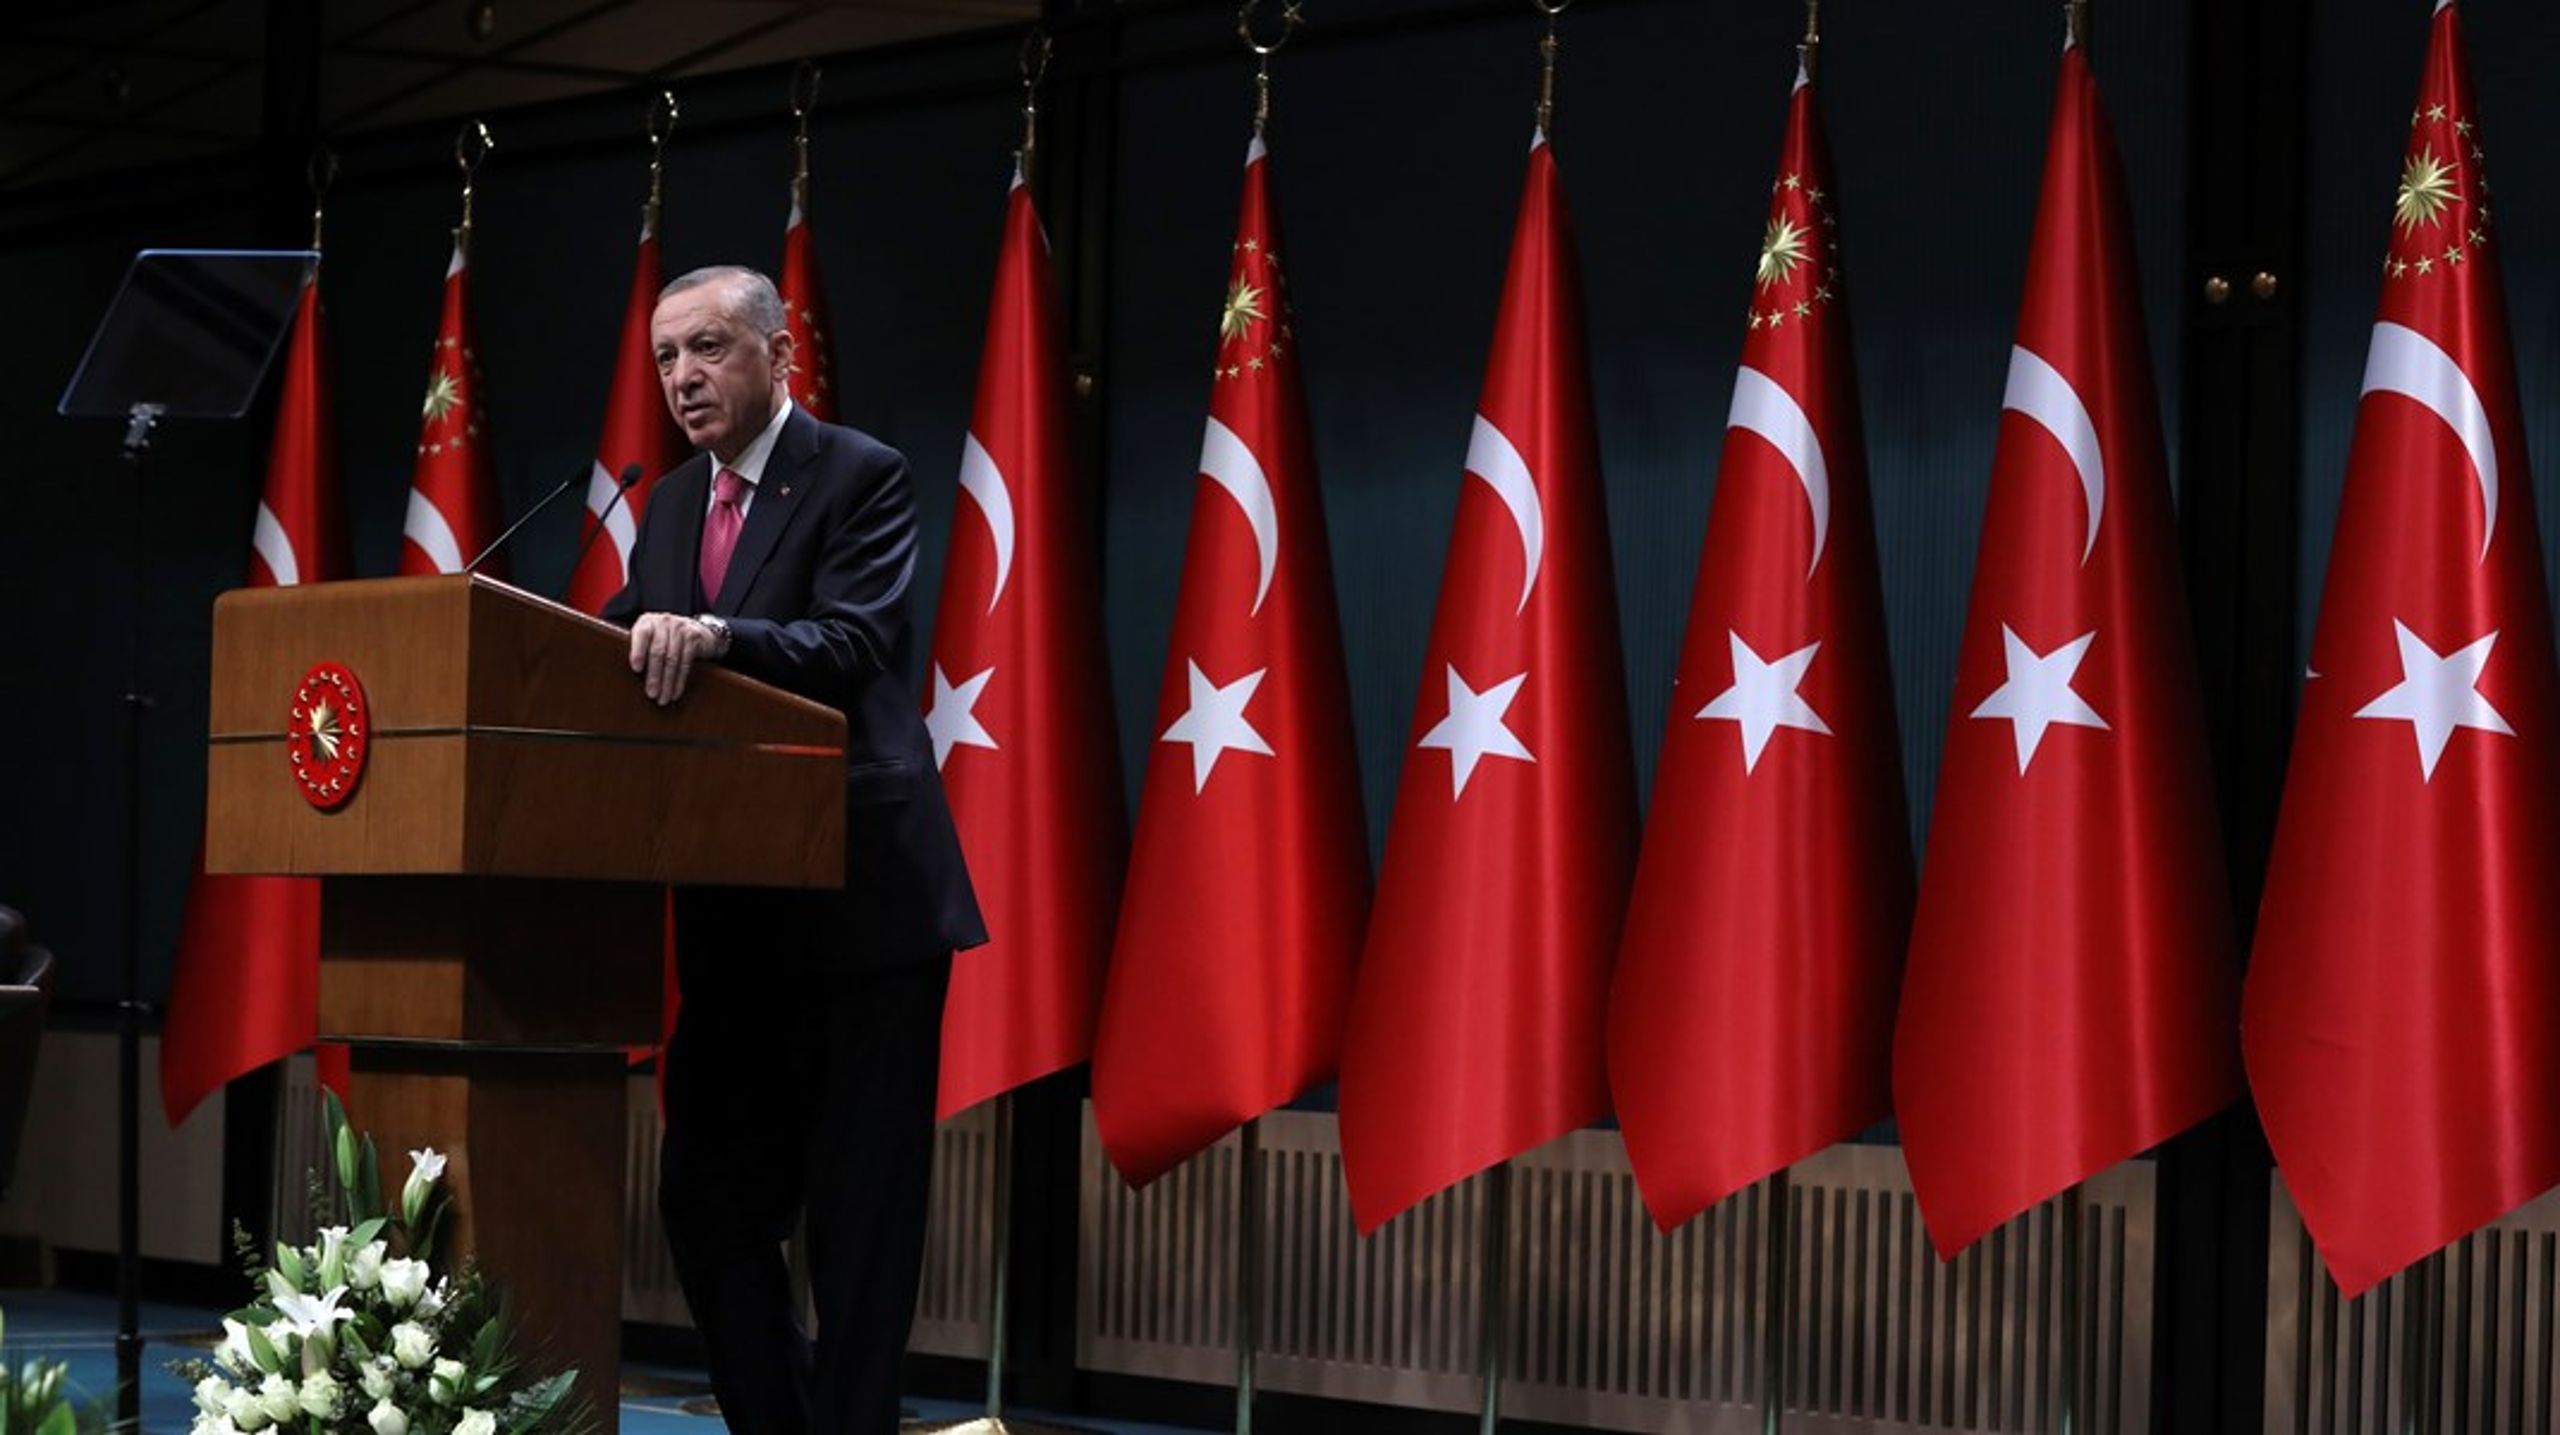 Søndag går tyrkerne til valgurnene. Nå skal det avgjøres om president&nbsp;Recep Tayyip Erdoğan&nbsp;får bli sittende, eller om det blir slutten på en flere årtier lang styreperiode.&nbsp;